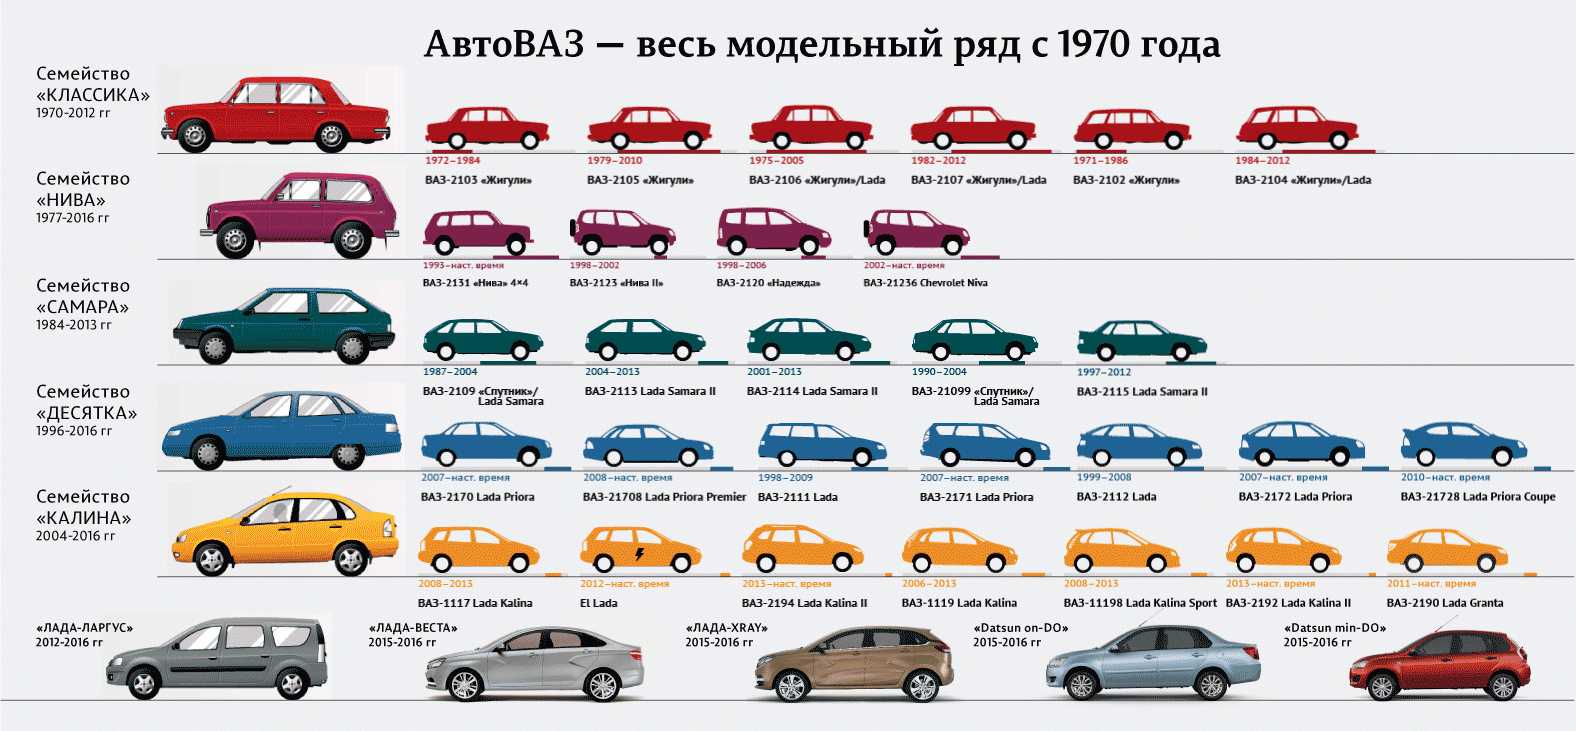 Полная информация об автомобилях марки Pontiac, моделях, субмоделях и модификациях